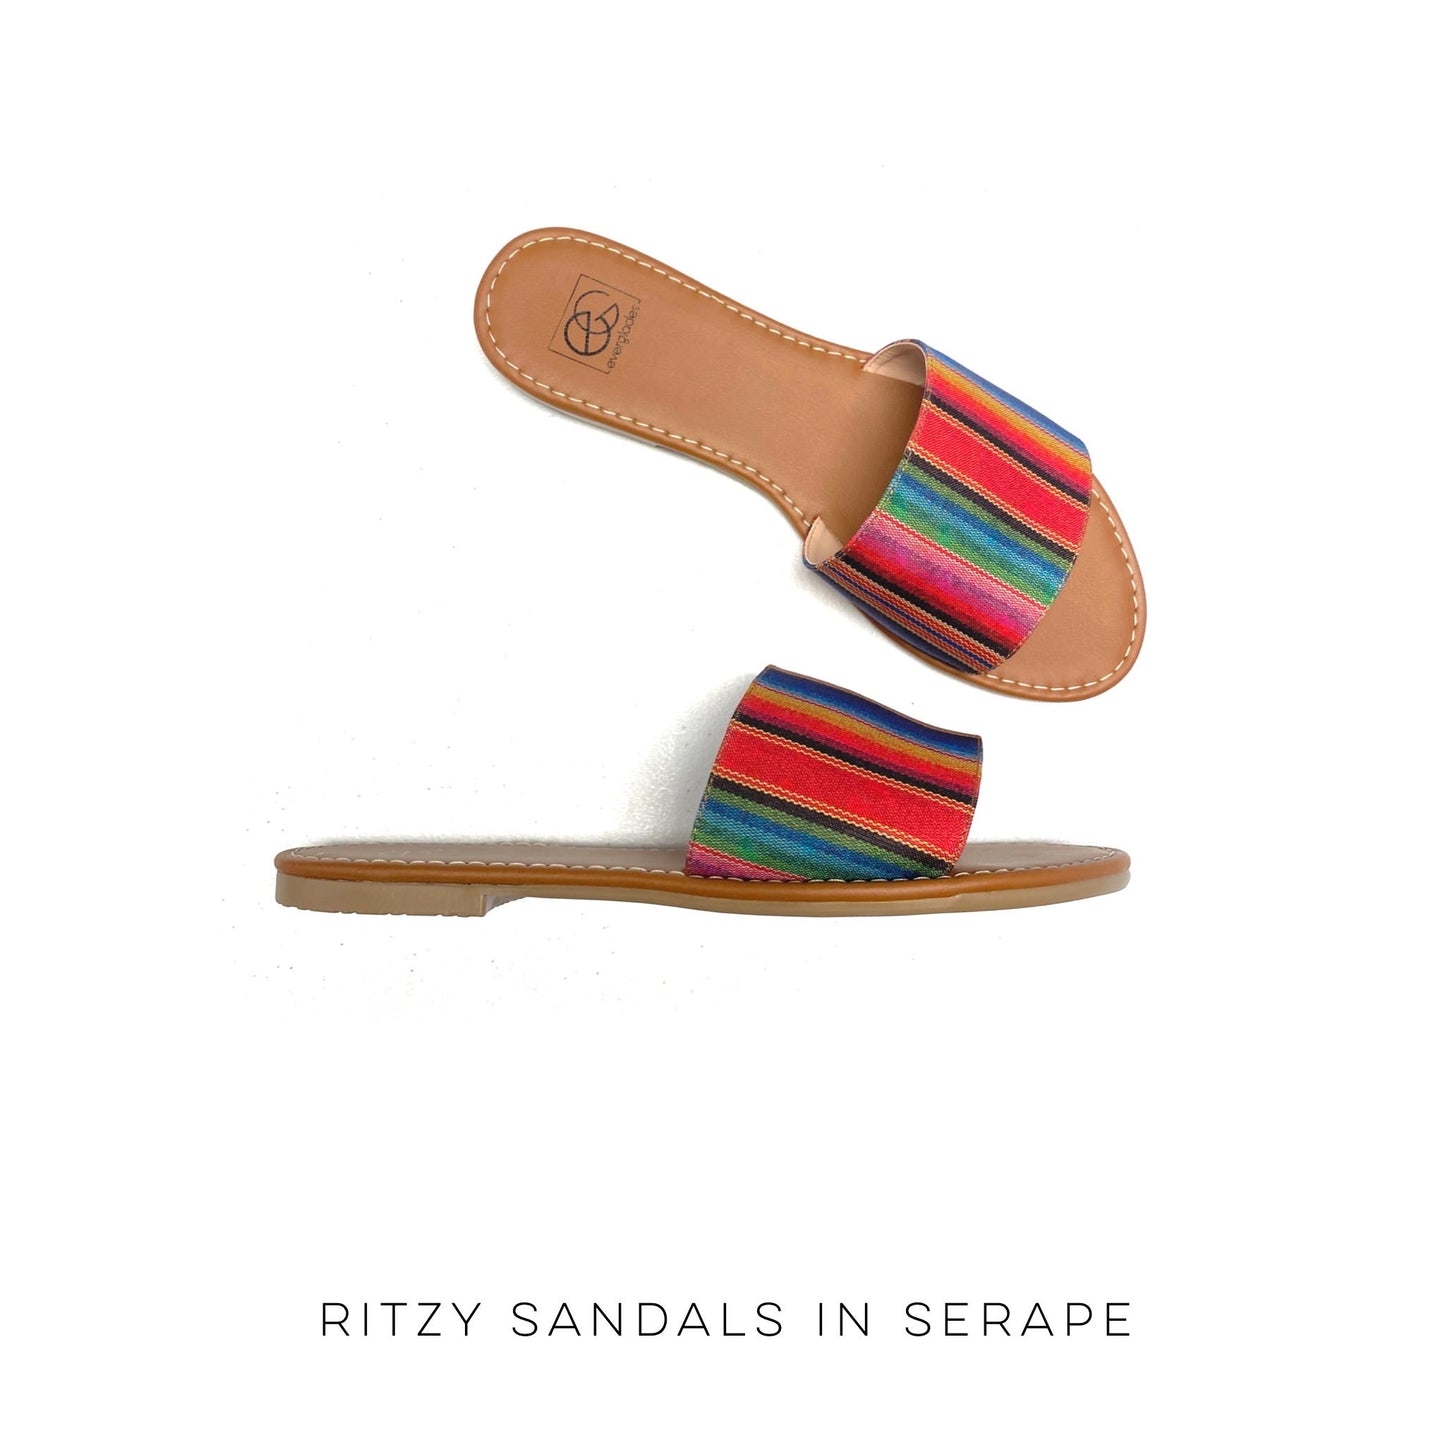 Ritzy Sandals in Serape